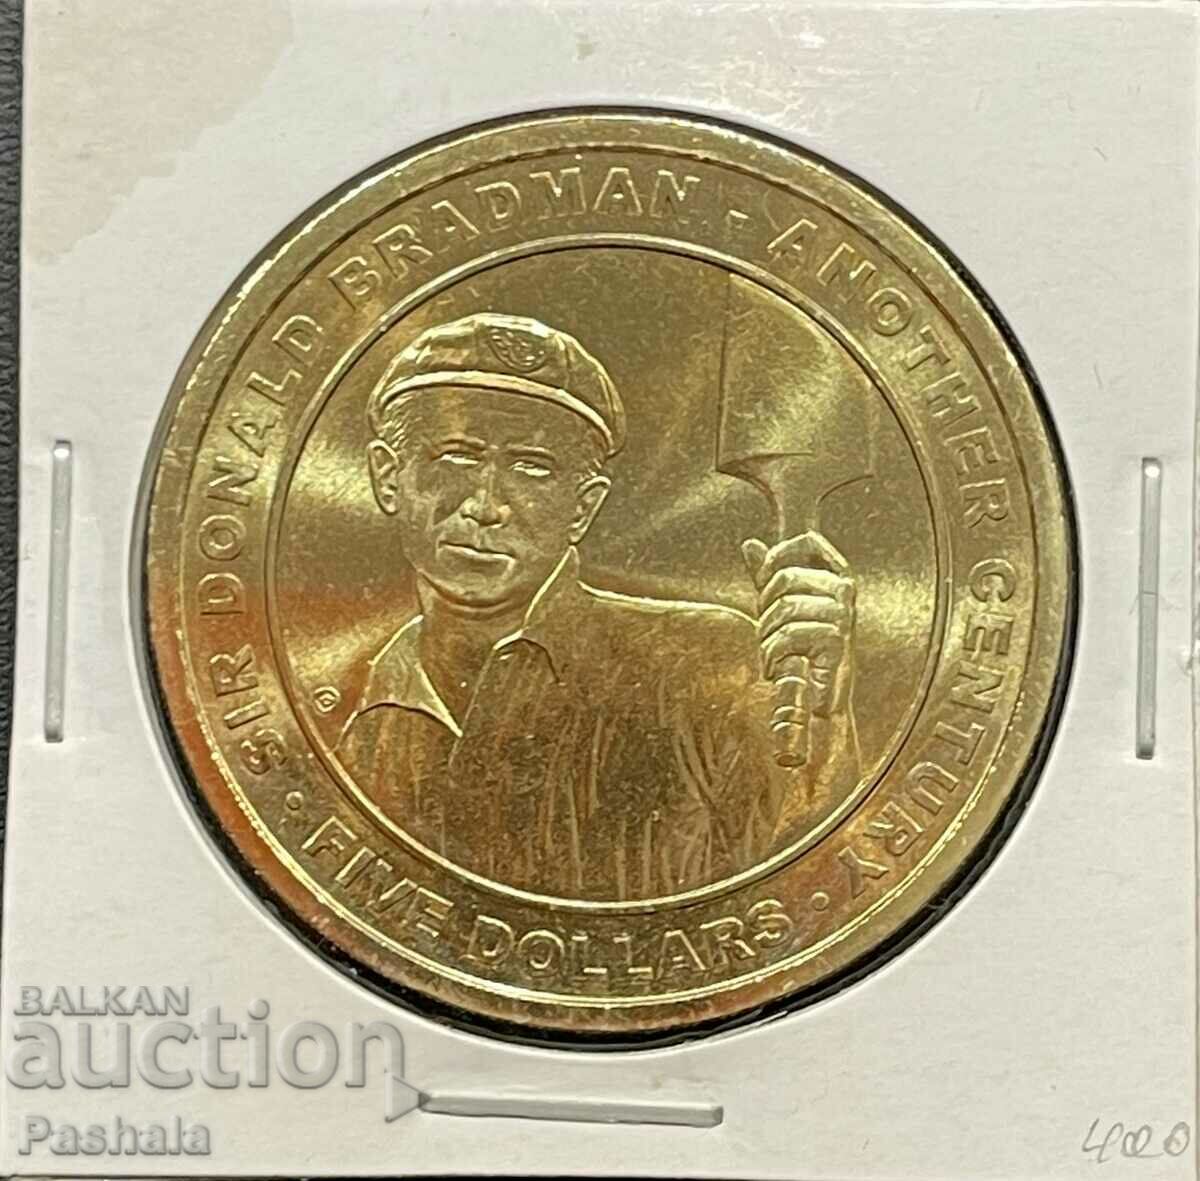 Australia $5 2008